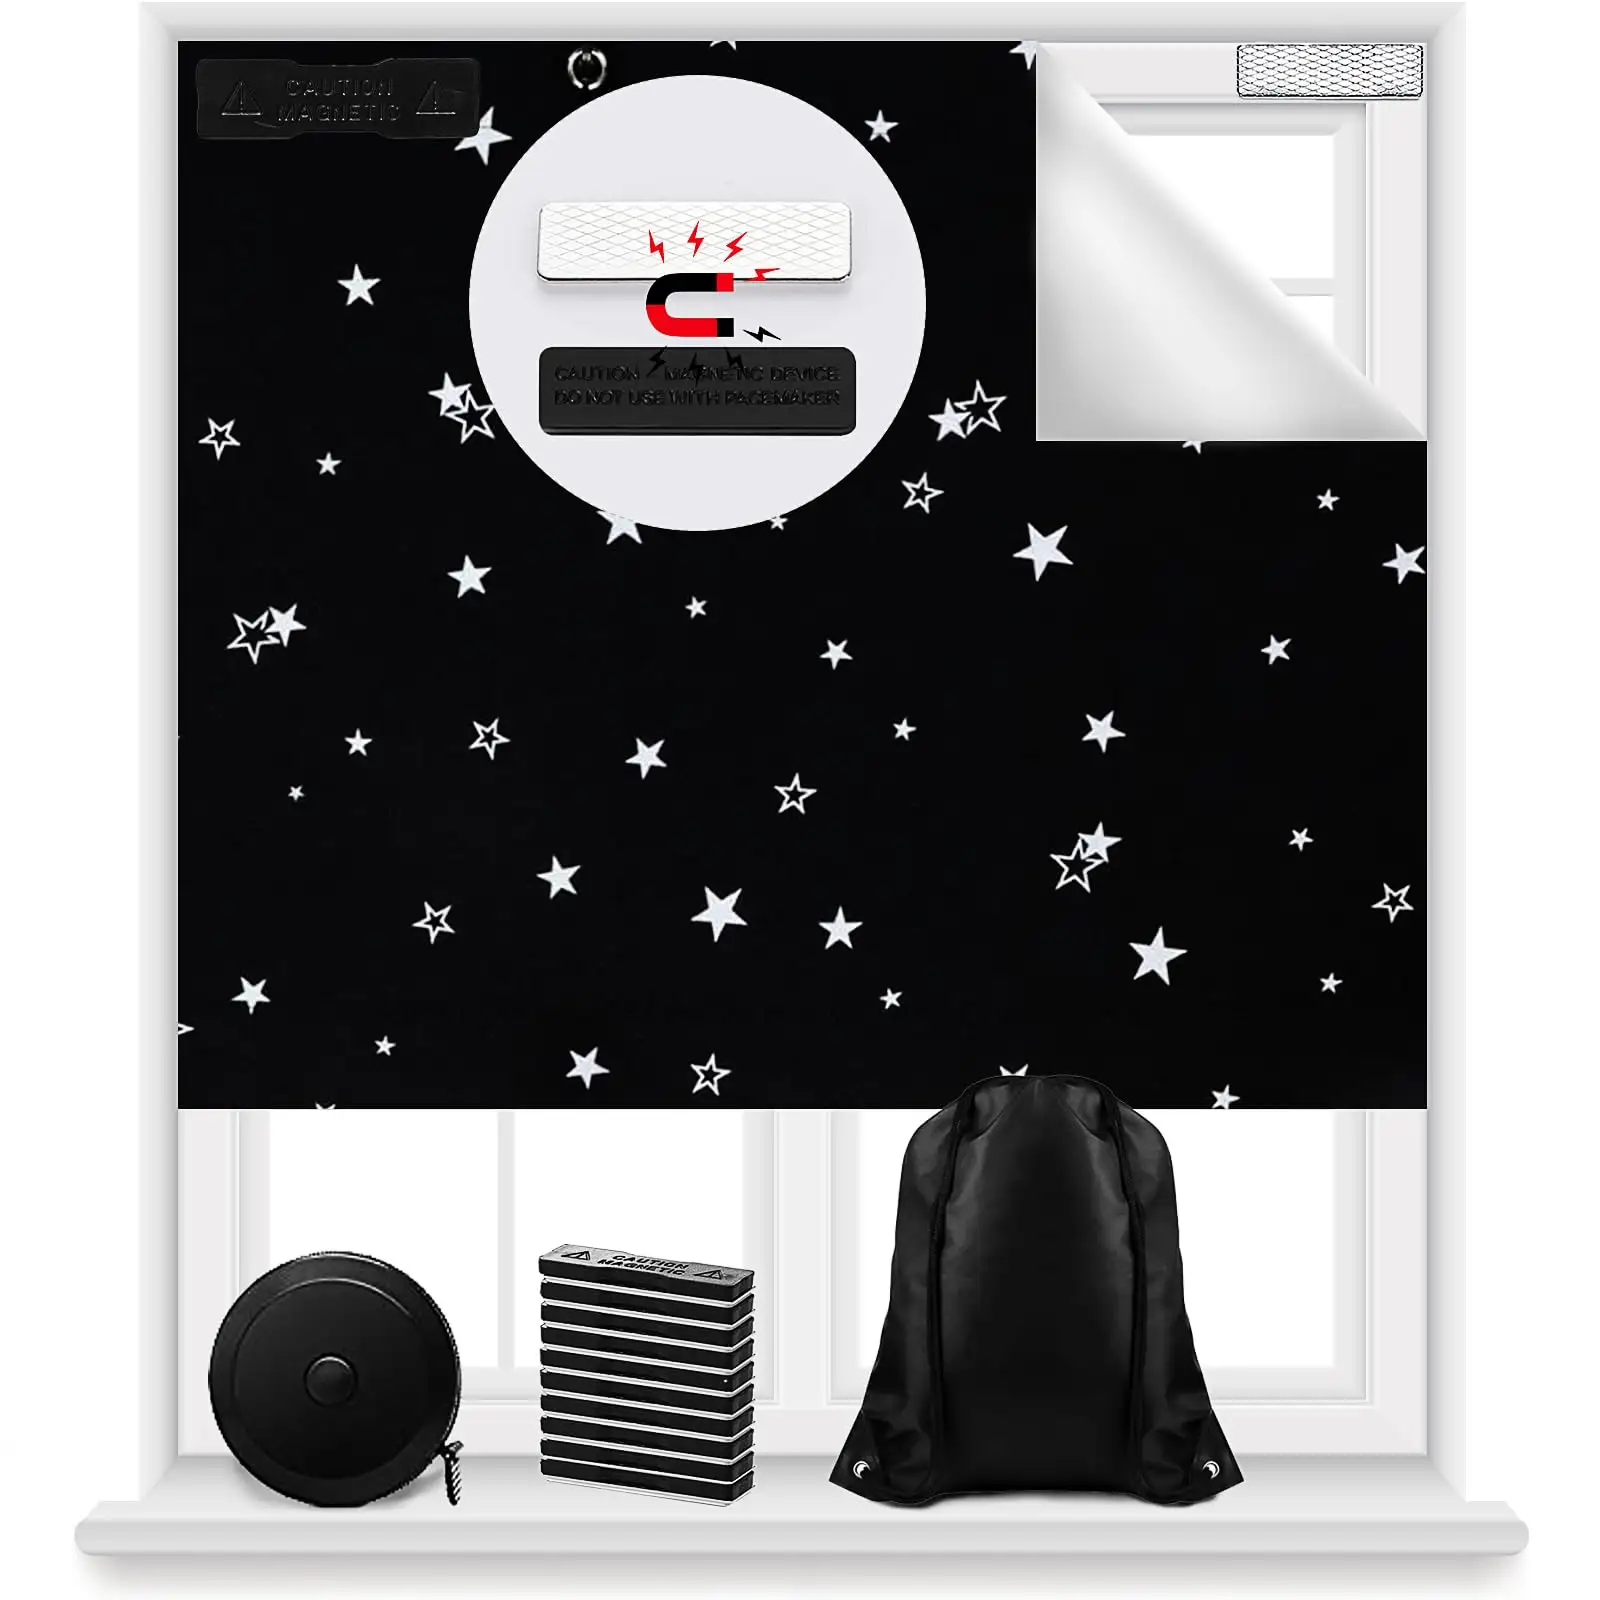 Cortina blackout magnética 100% portátil para janelas, cortina blackout para berçário de crianças e bebês